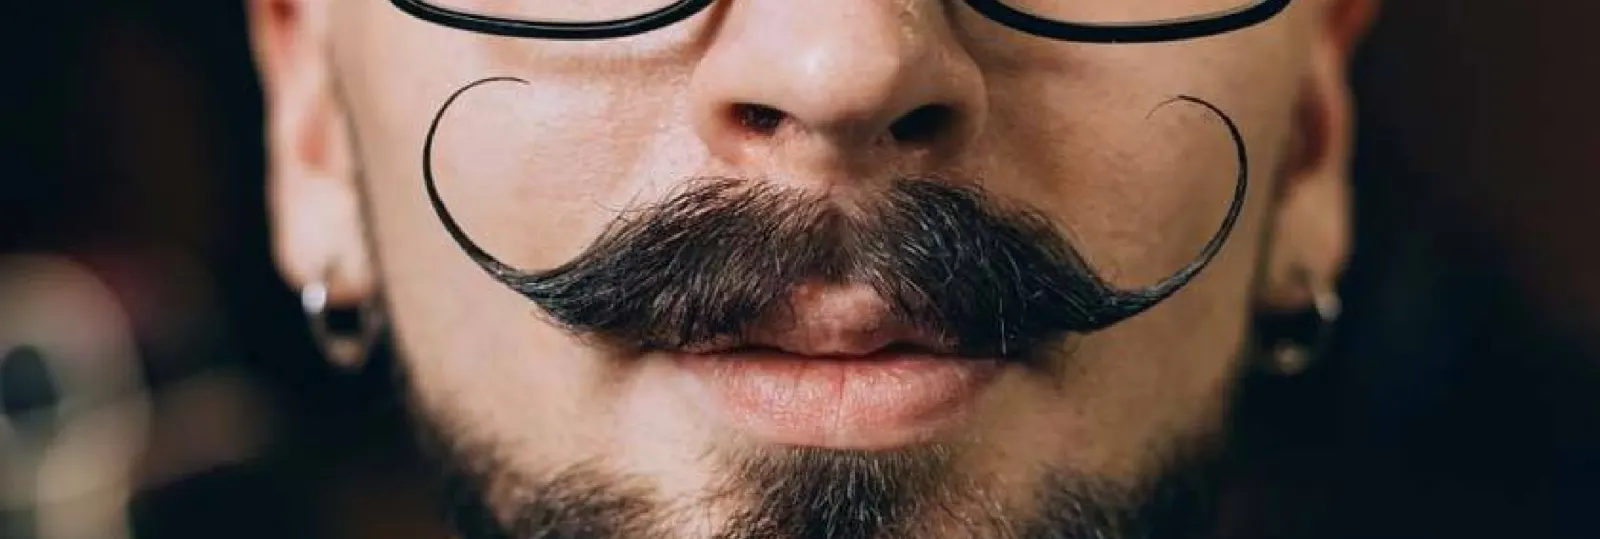 Le style extravagant de la moustache de Dalí